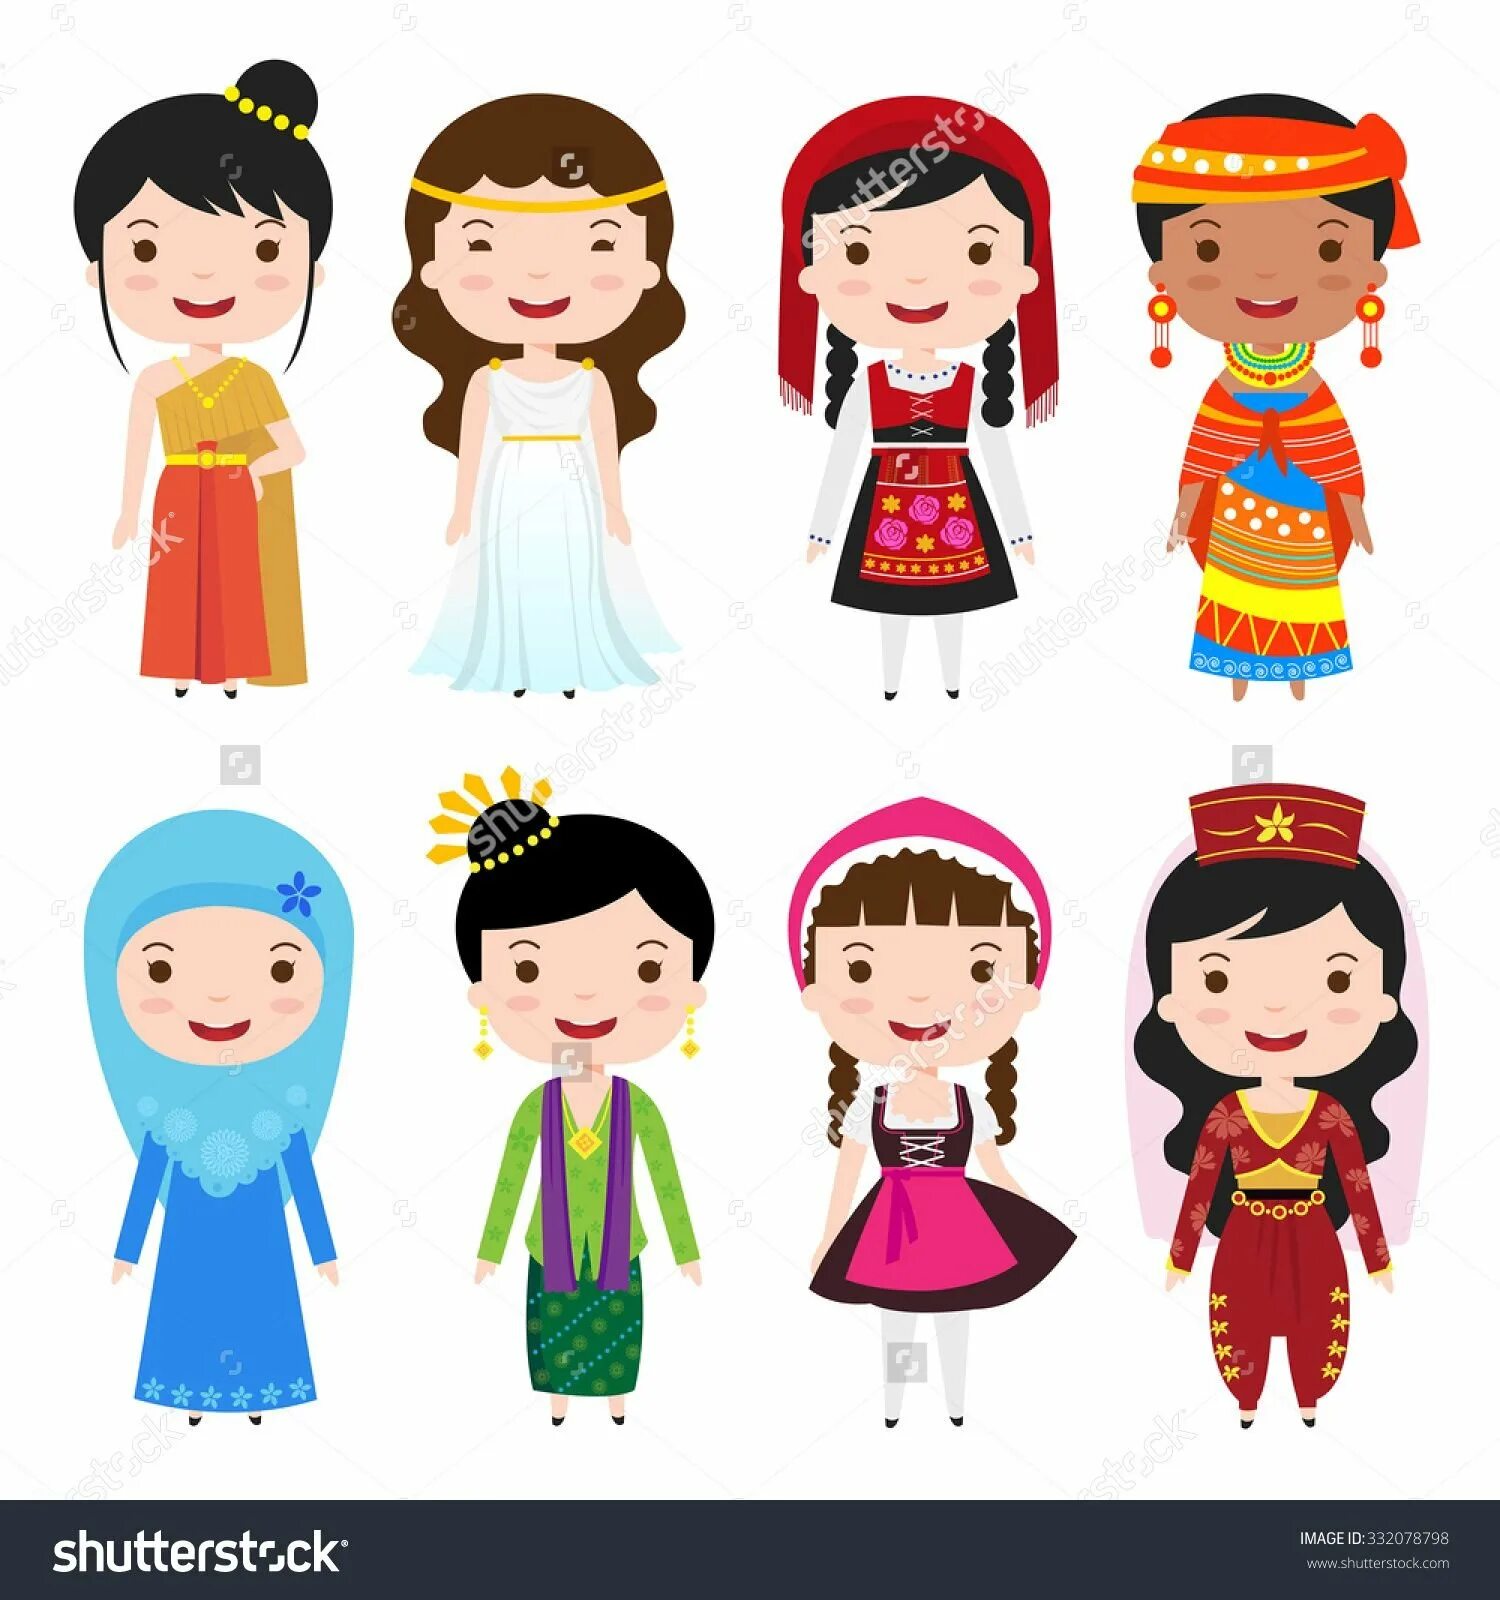 Рисунок разных национальностей. Костюмы разных народов. Дети разных национальностей. Национальности для детей. Человечки в разных национальных костюмах.